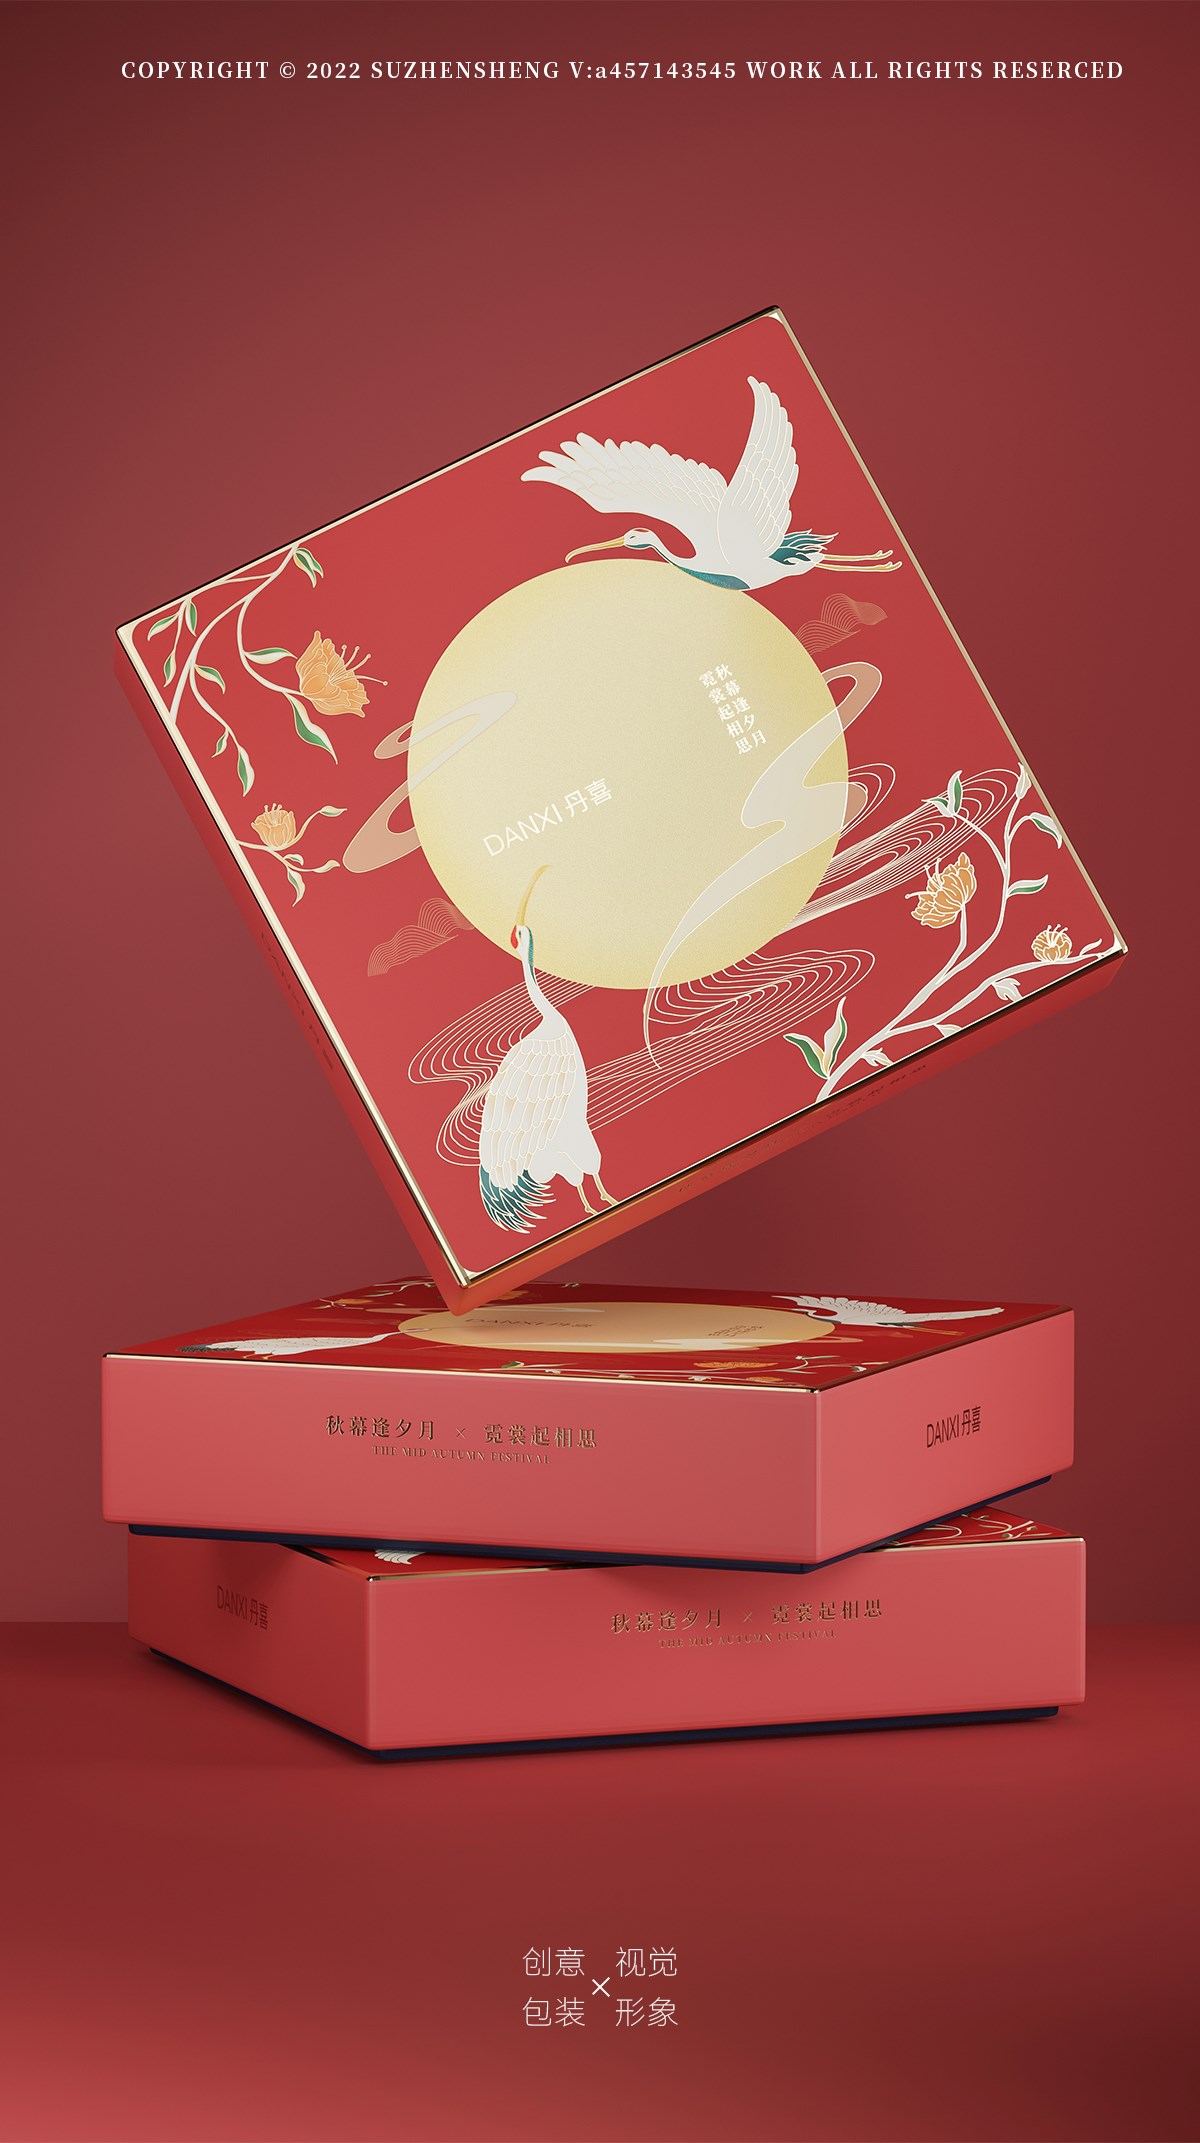 月伴鹤月饼包装礼盒 - 潮汕人自己的月饼